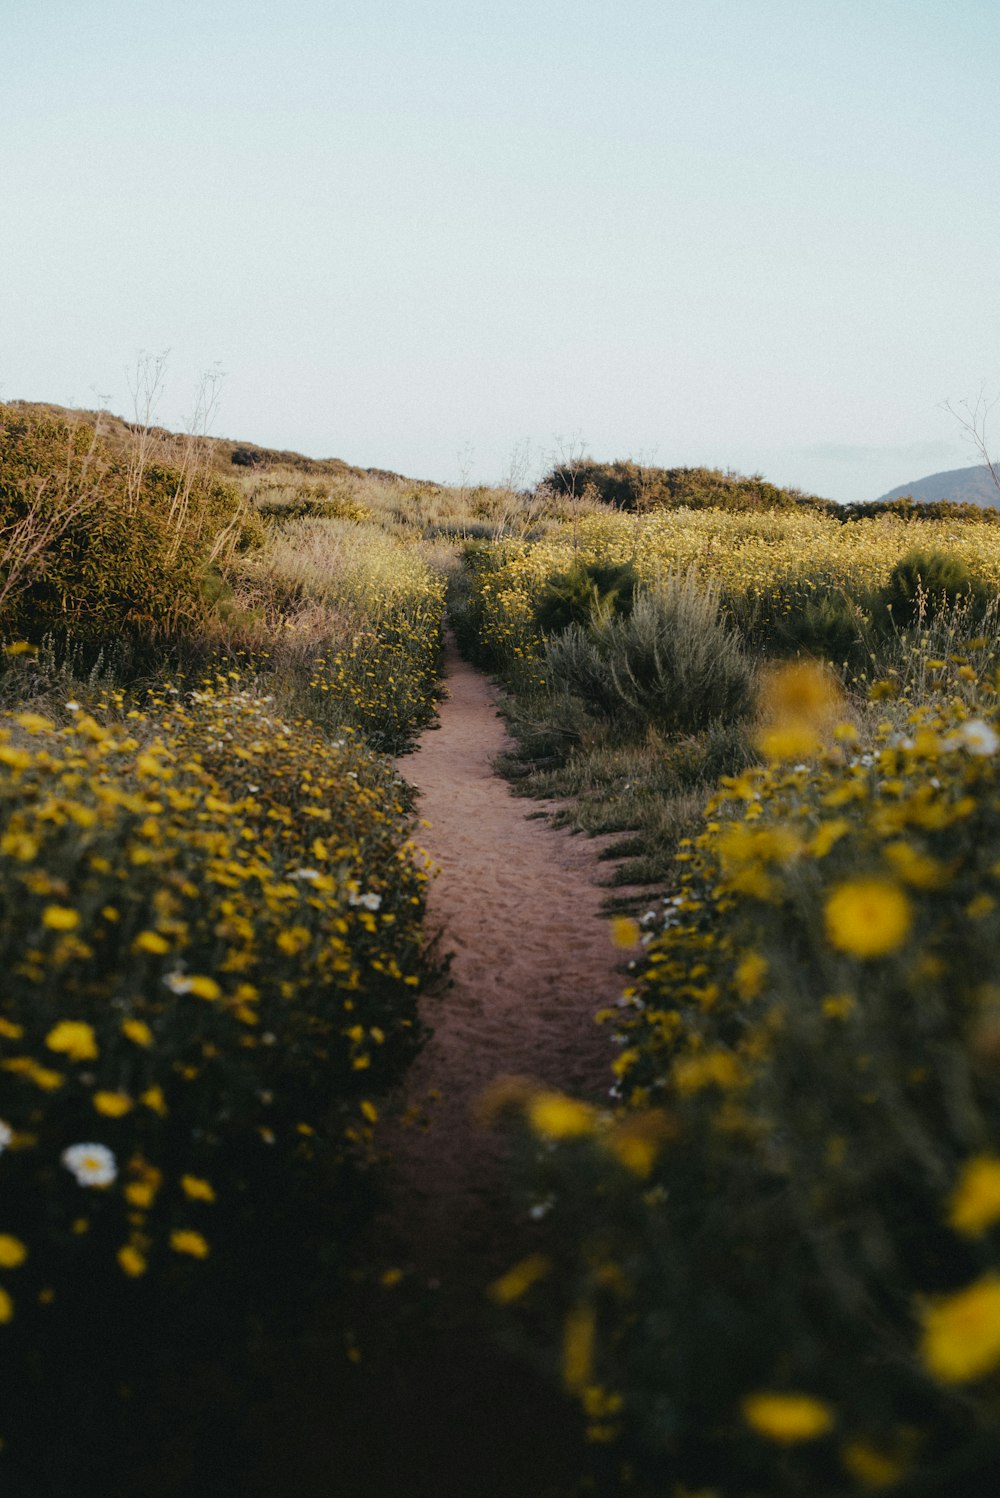 fleurs jaunes sur un chemin de terre brun